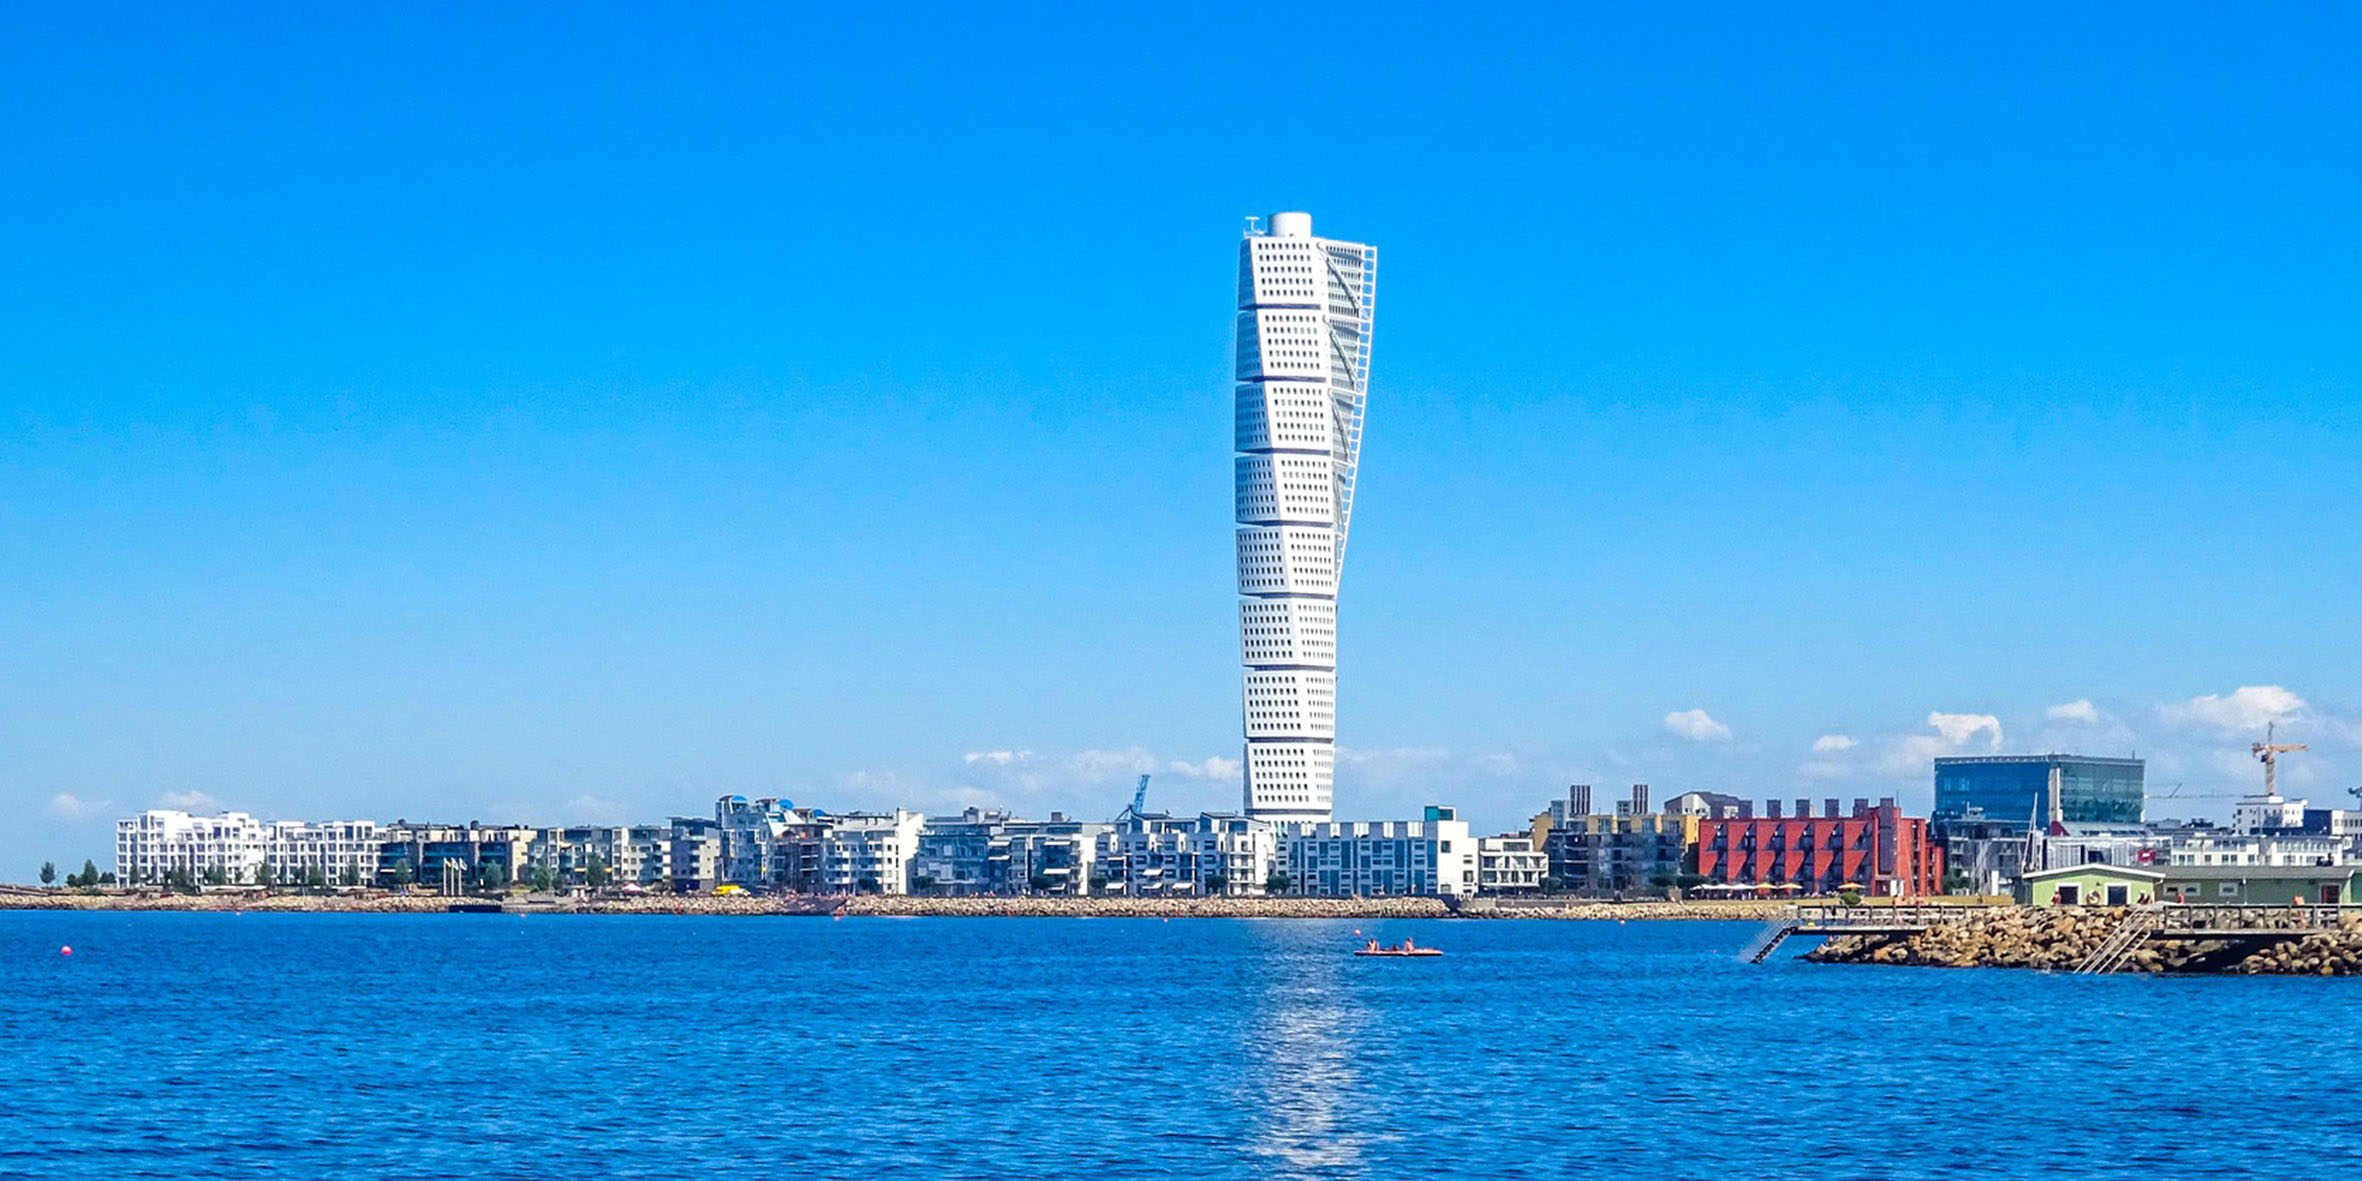 En stor vit skyskrapa som ser tvistad ut, Turning torso i Malmö. Bakom ser man en knallblå himmel och blått hav framför. Man ser låga hus precis vid strandkanten.